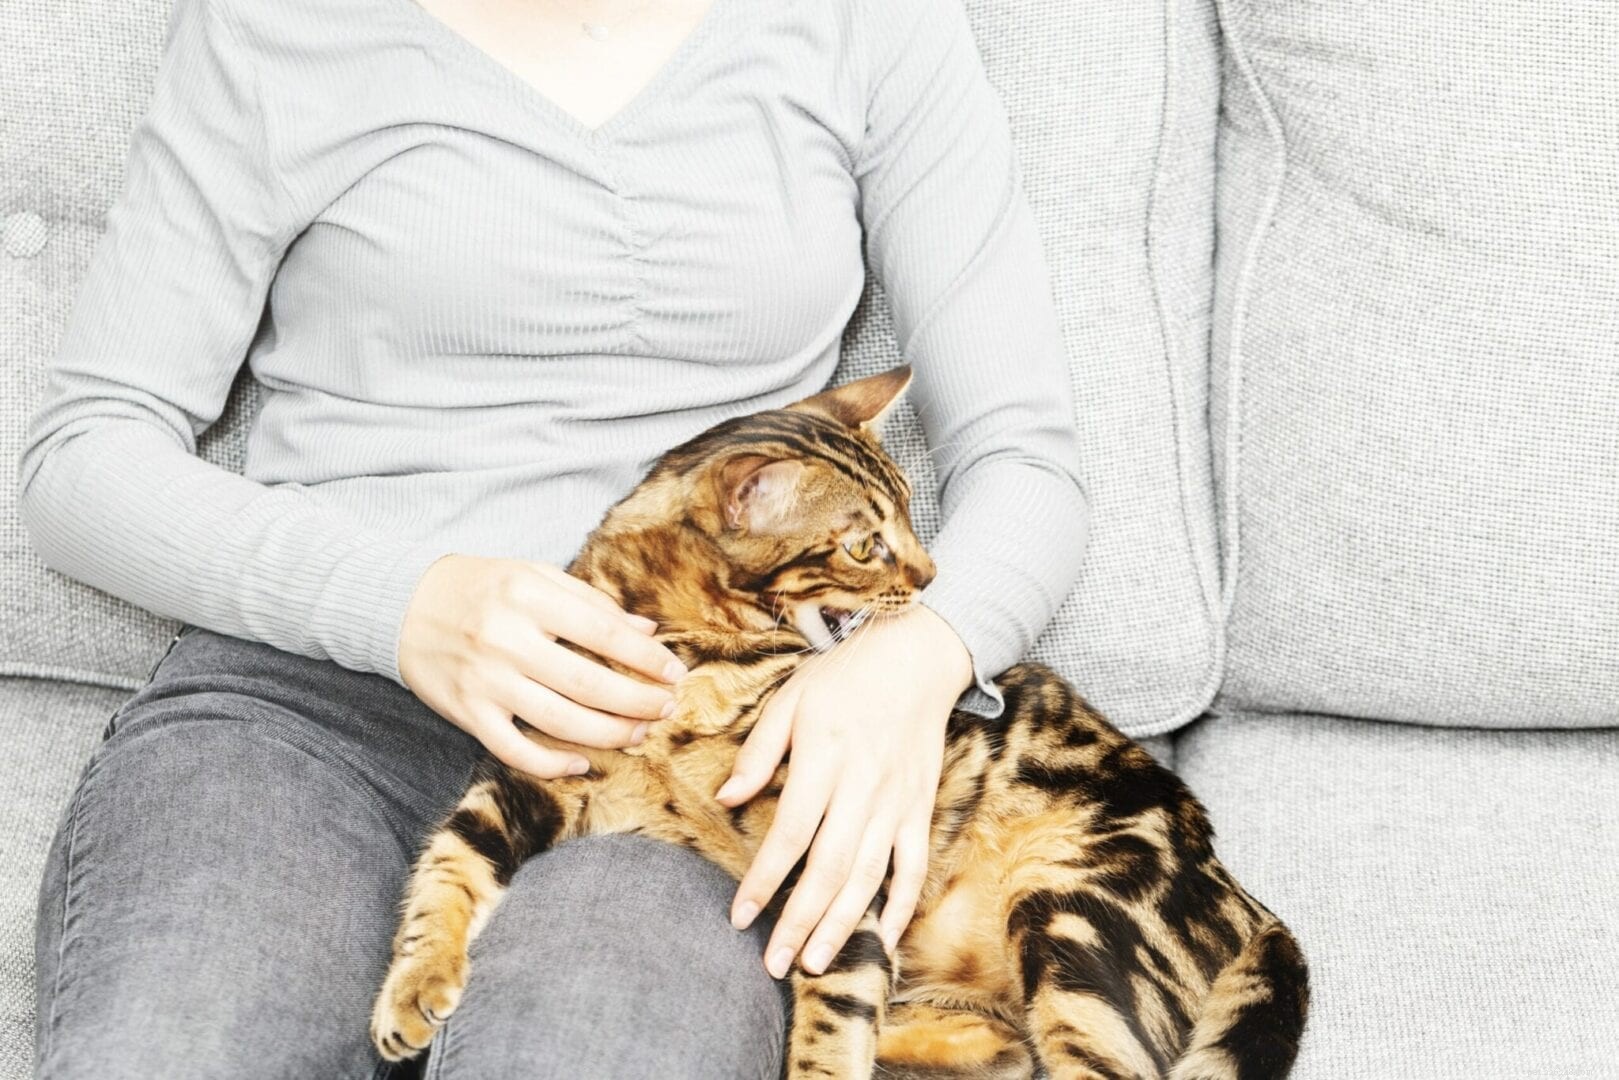 Os gatos dão “mordidas de amor” ou estão sendo agressivos?